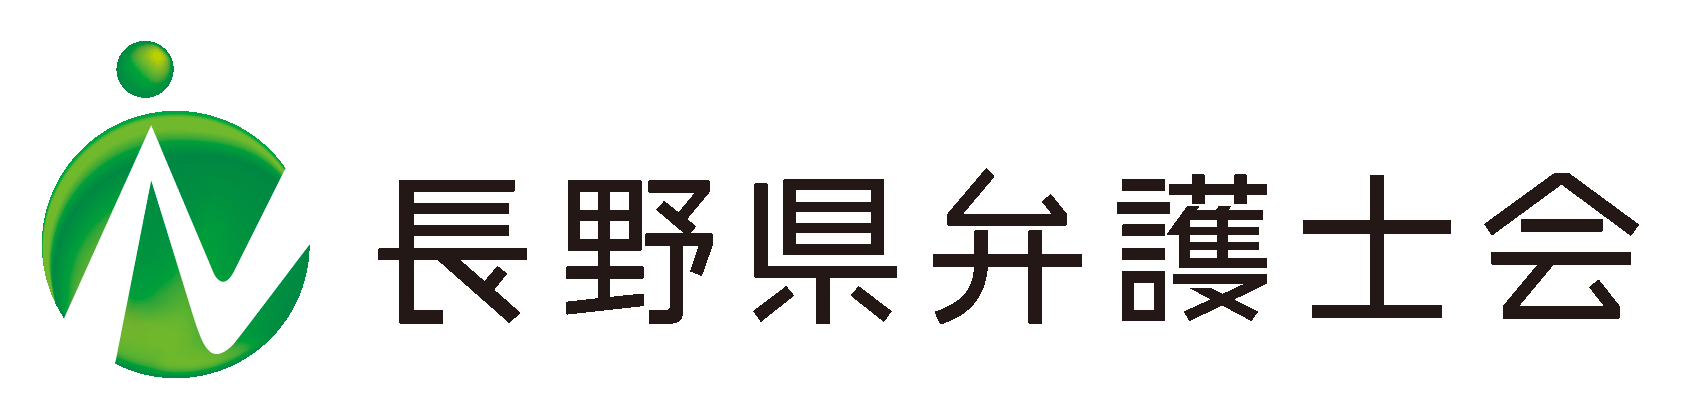 《長野県弁護士会》は、長野県内に法律事務所を持つ弁護士全員が加入する法定団体です。